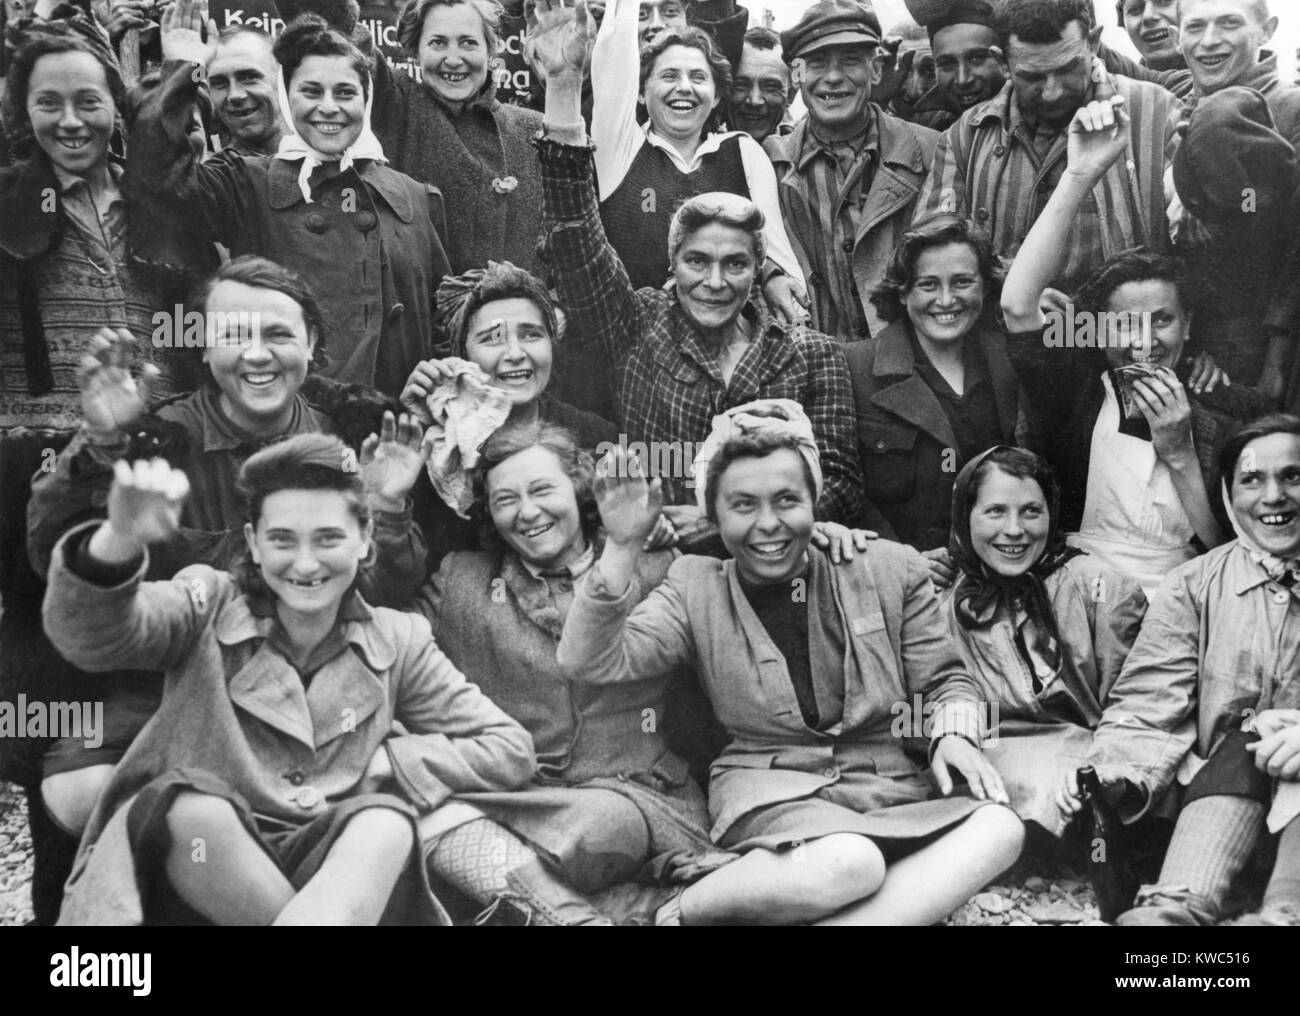 Les prisonnières libérées au camp de concentration de Dachau vague et bravo pour un portrait de groupe. Photo a été prise par le photographe américain Signal Corps, ca. 29 avril 1945, la Première Guerre mondiale (BSLOC 2  2015 13 22) Banque D'Images